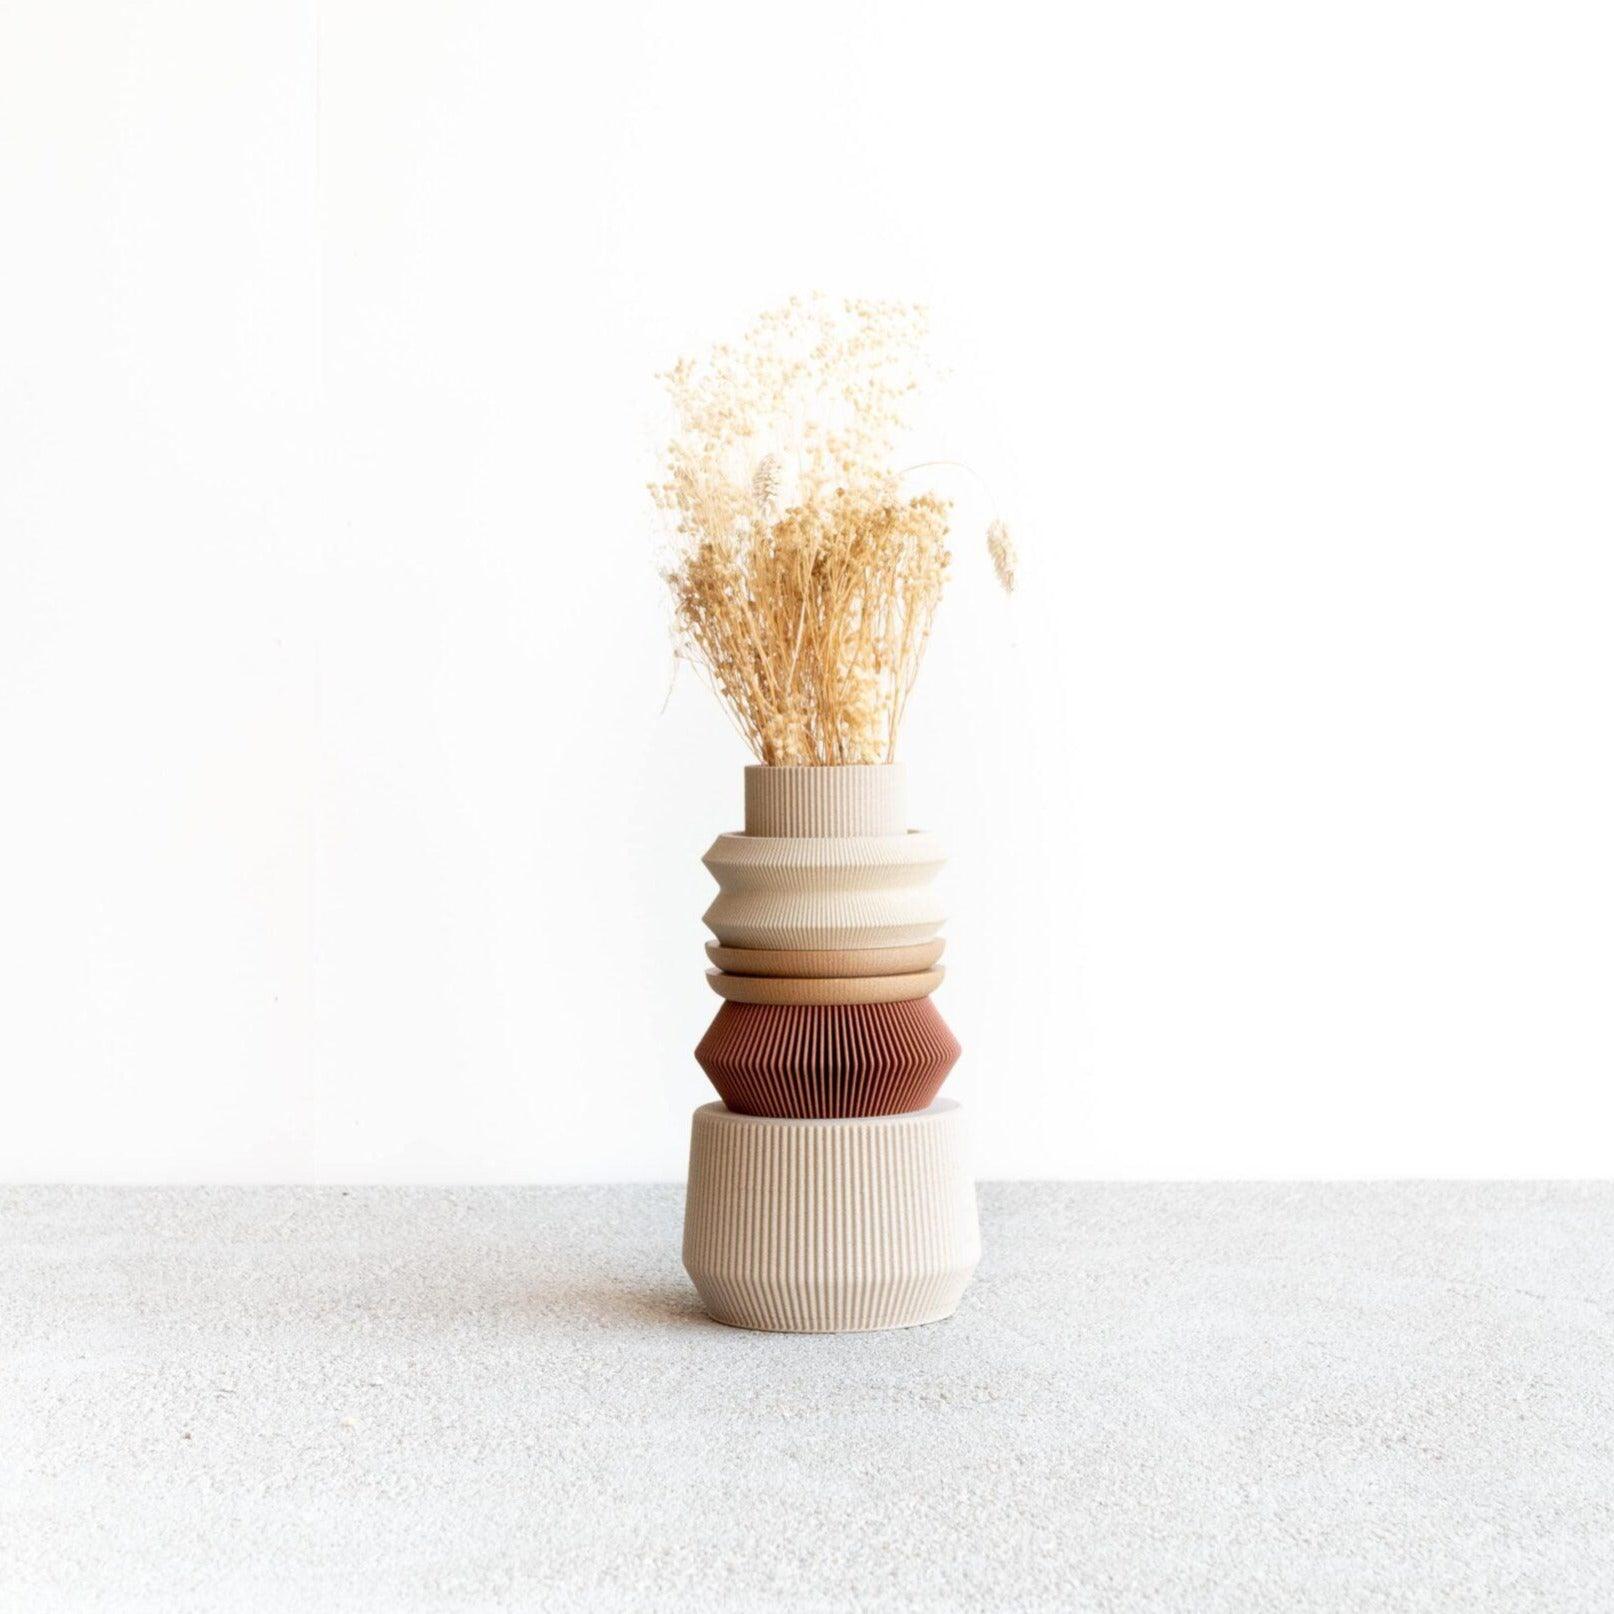 AUSTIN Modular Vase - Minimum Design 